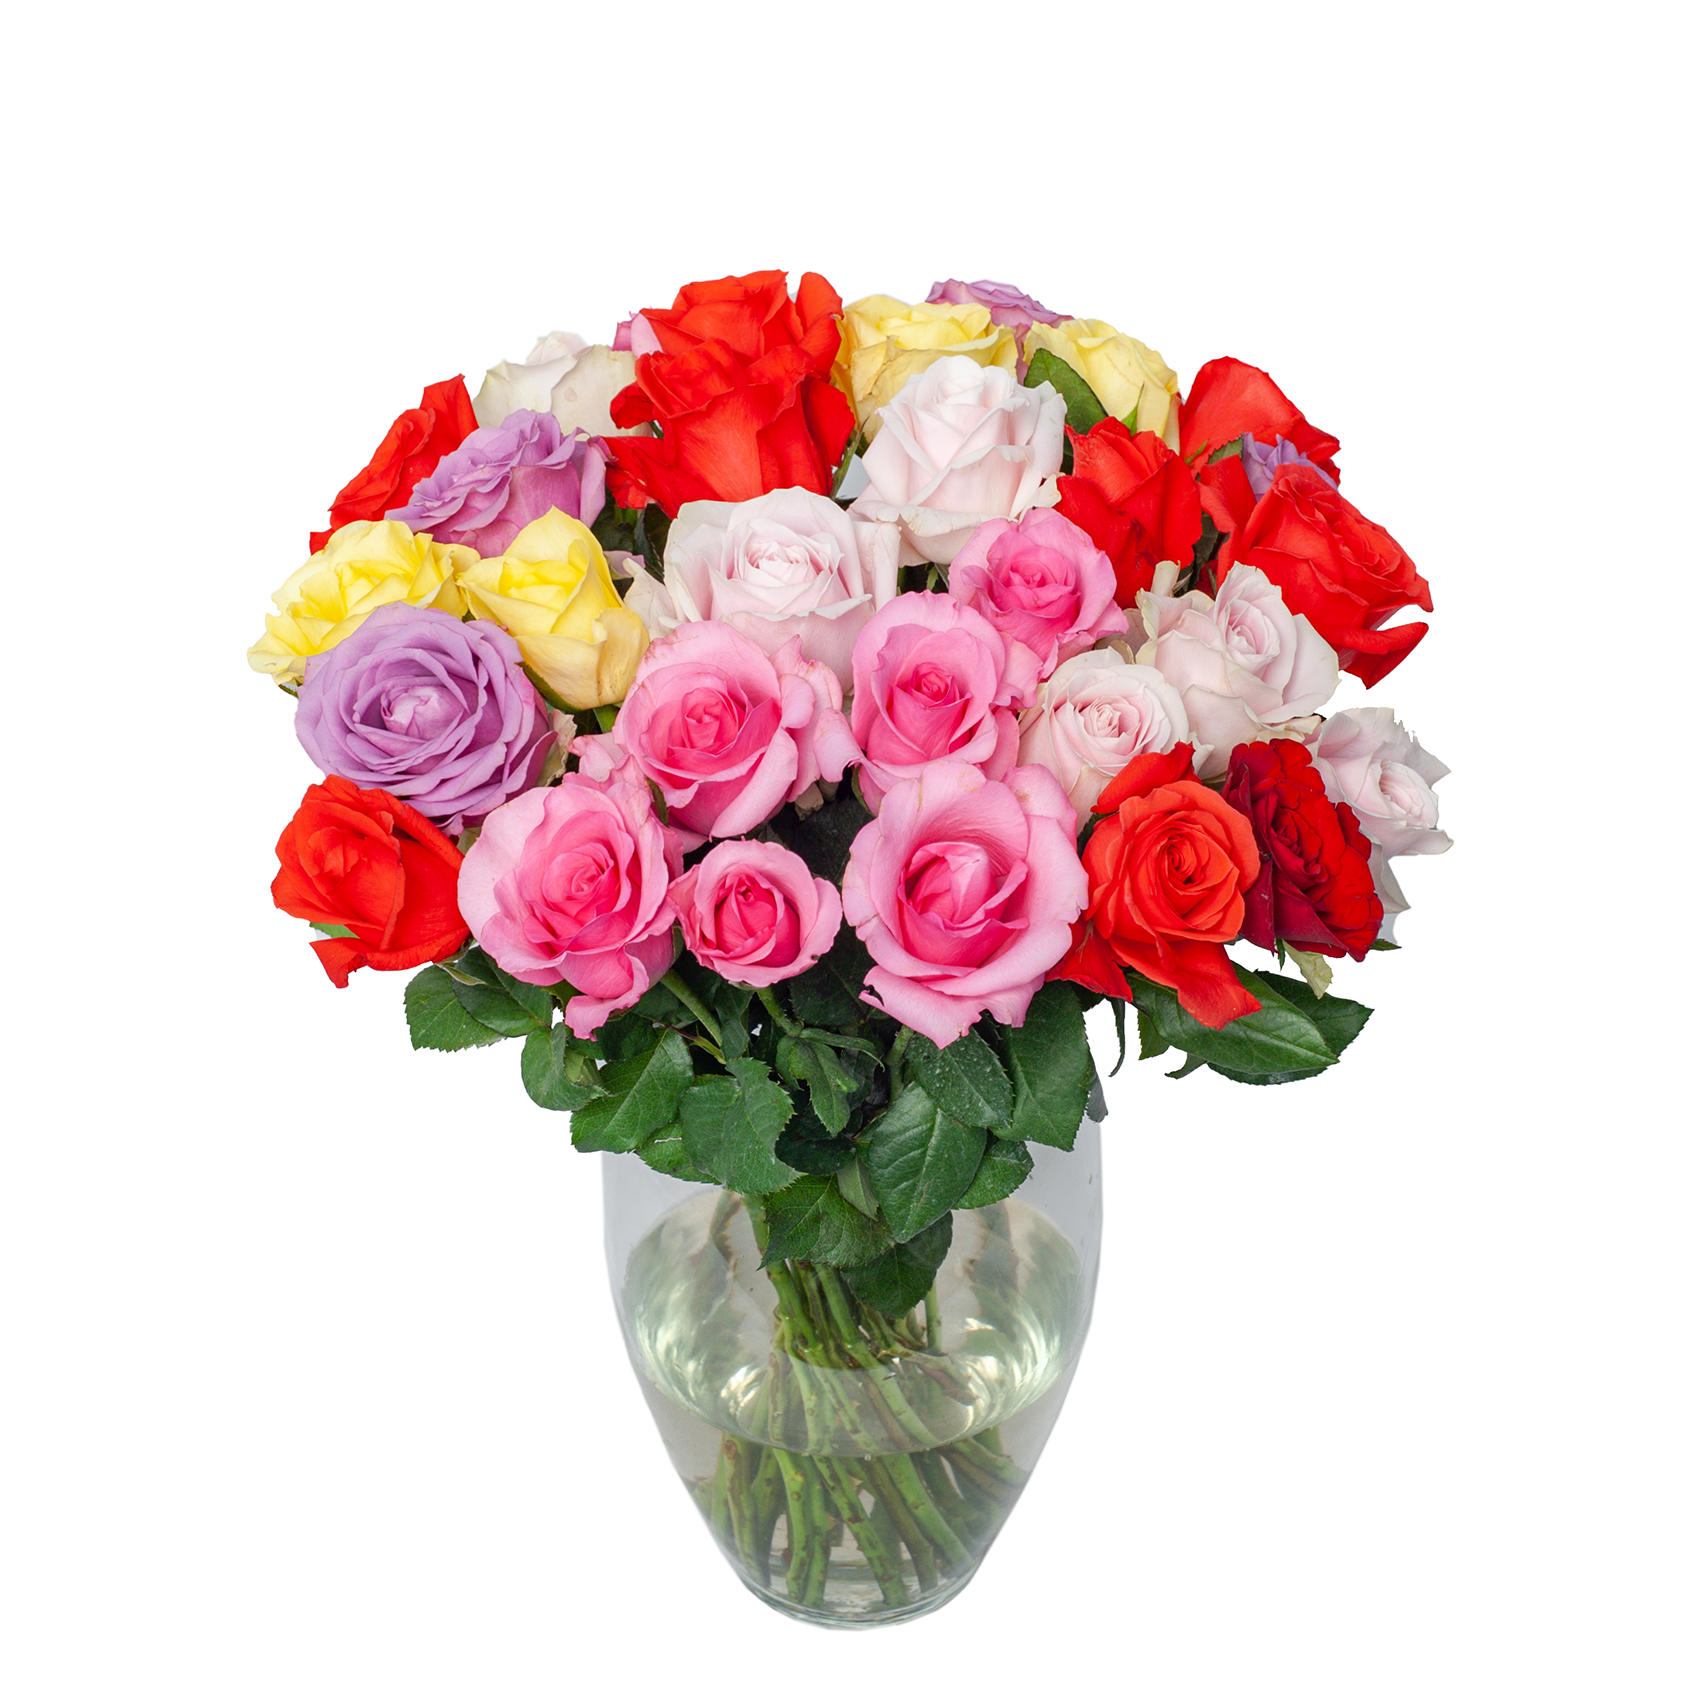 Hoa Hồng mix màu, Hoa Đà Lạt ( Bó 10 cành) - Hoa tươi cắm trang trí nhà cửa, văn phòng